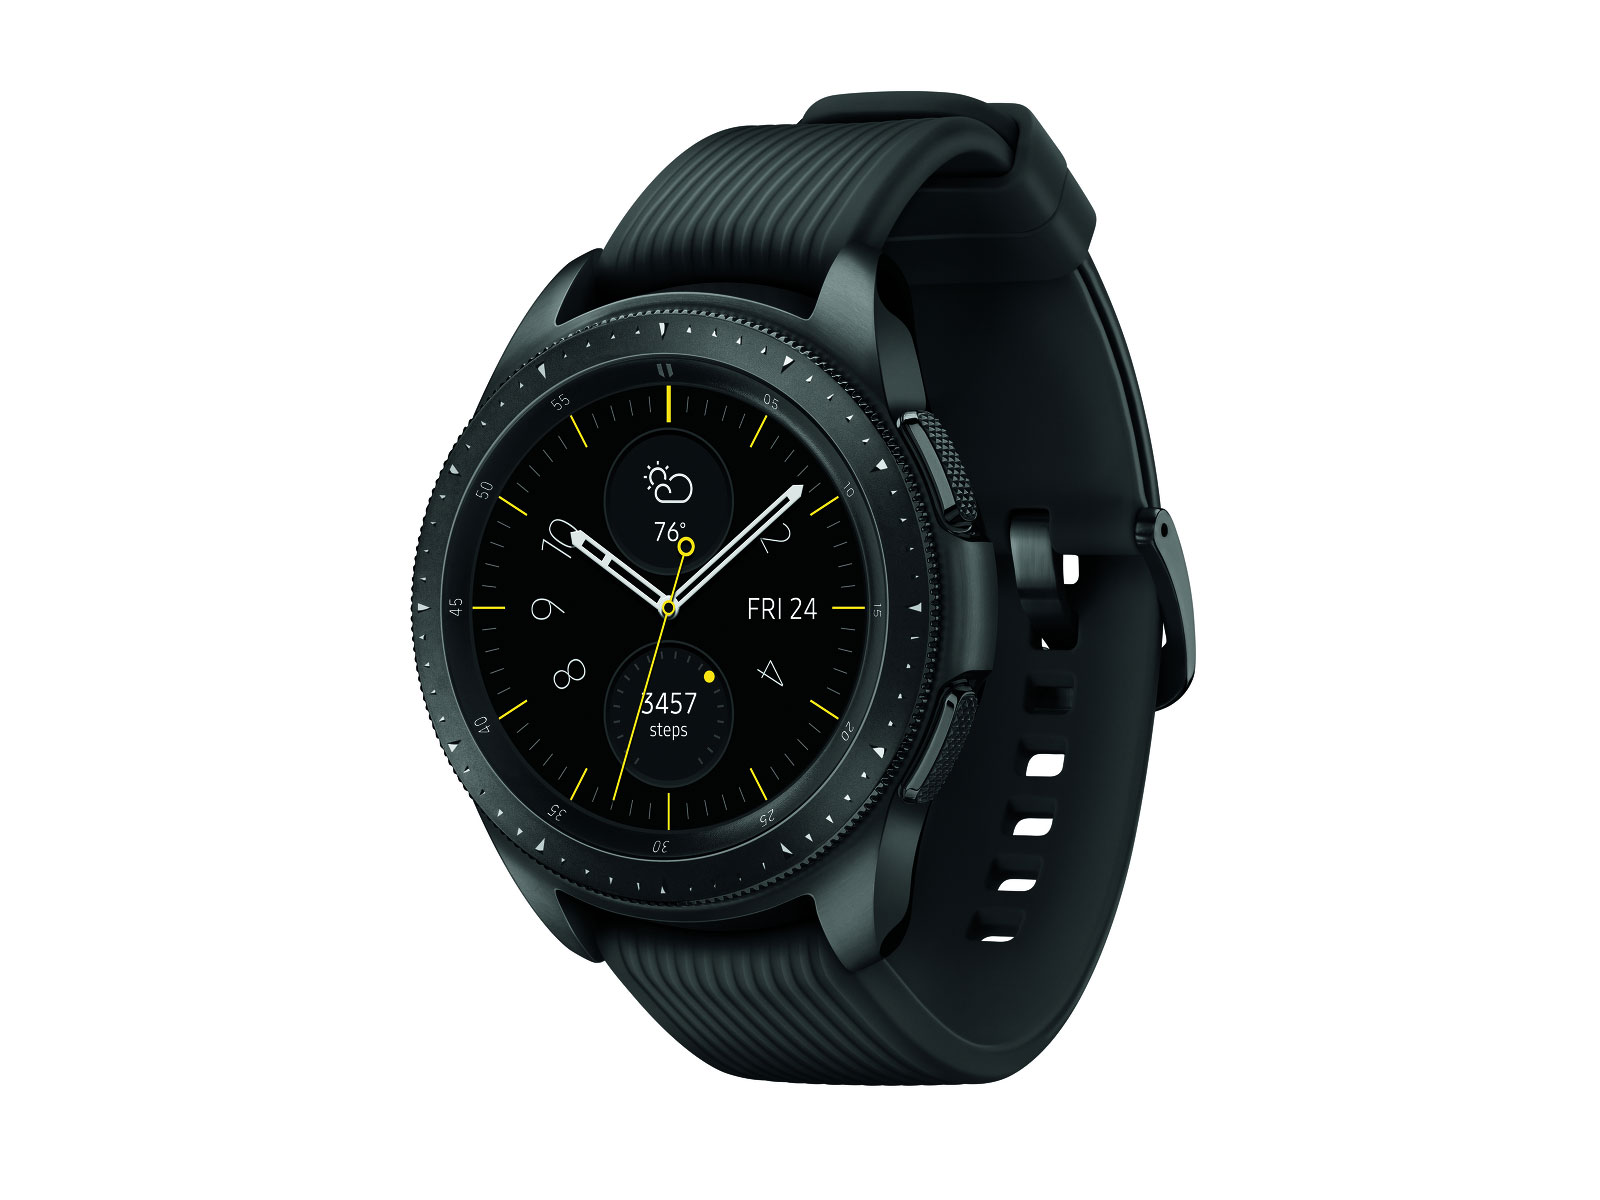 Midnight Black Samsung Galaxy Watch - 42mm LTE| Samsung US